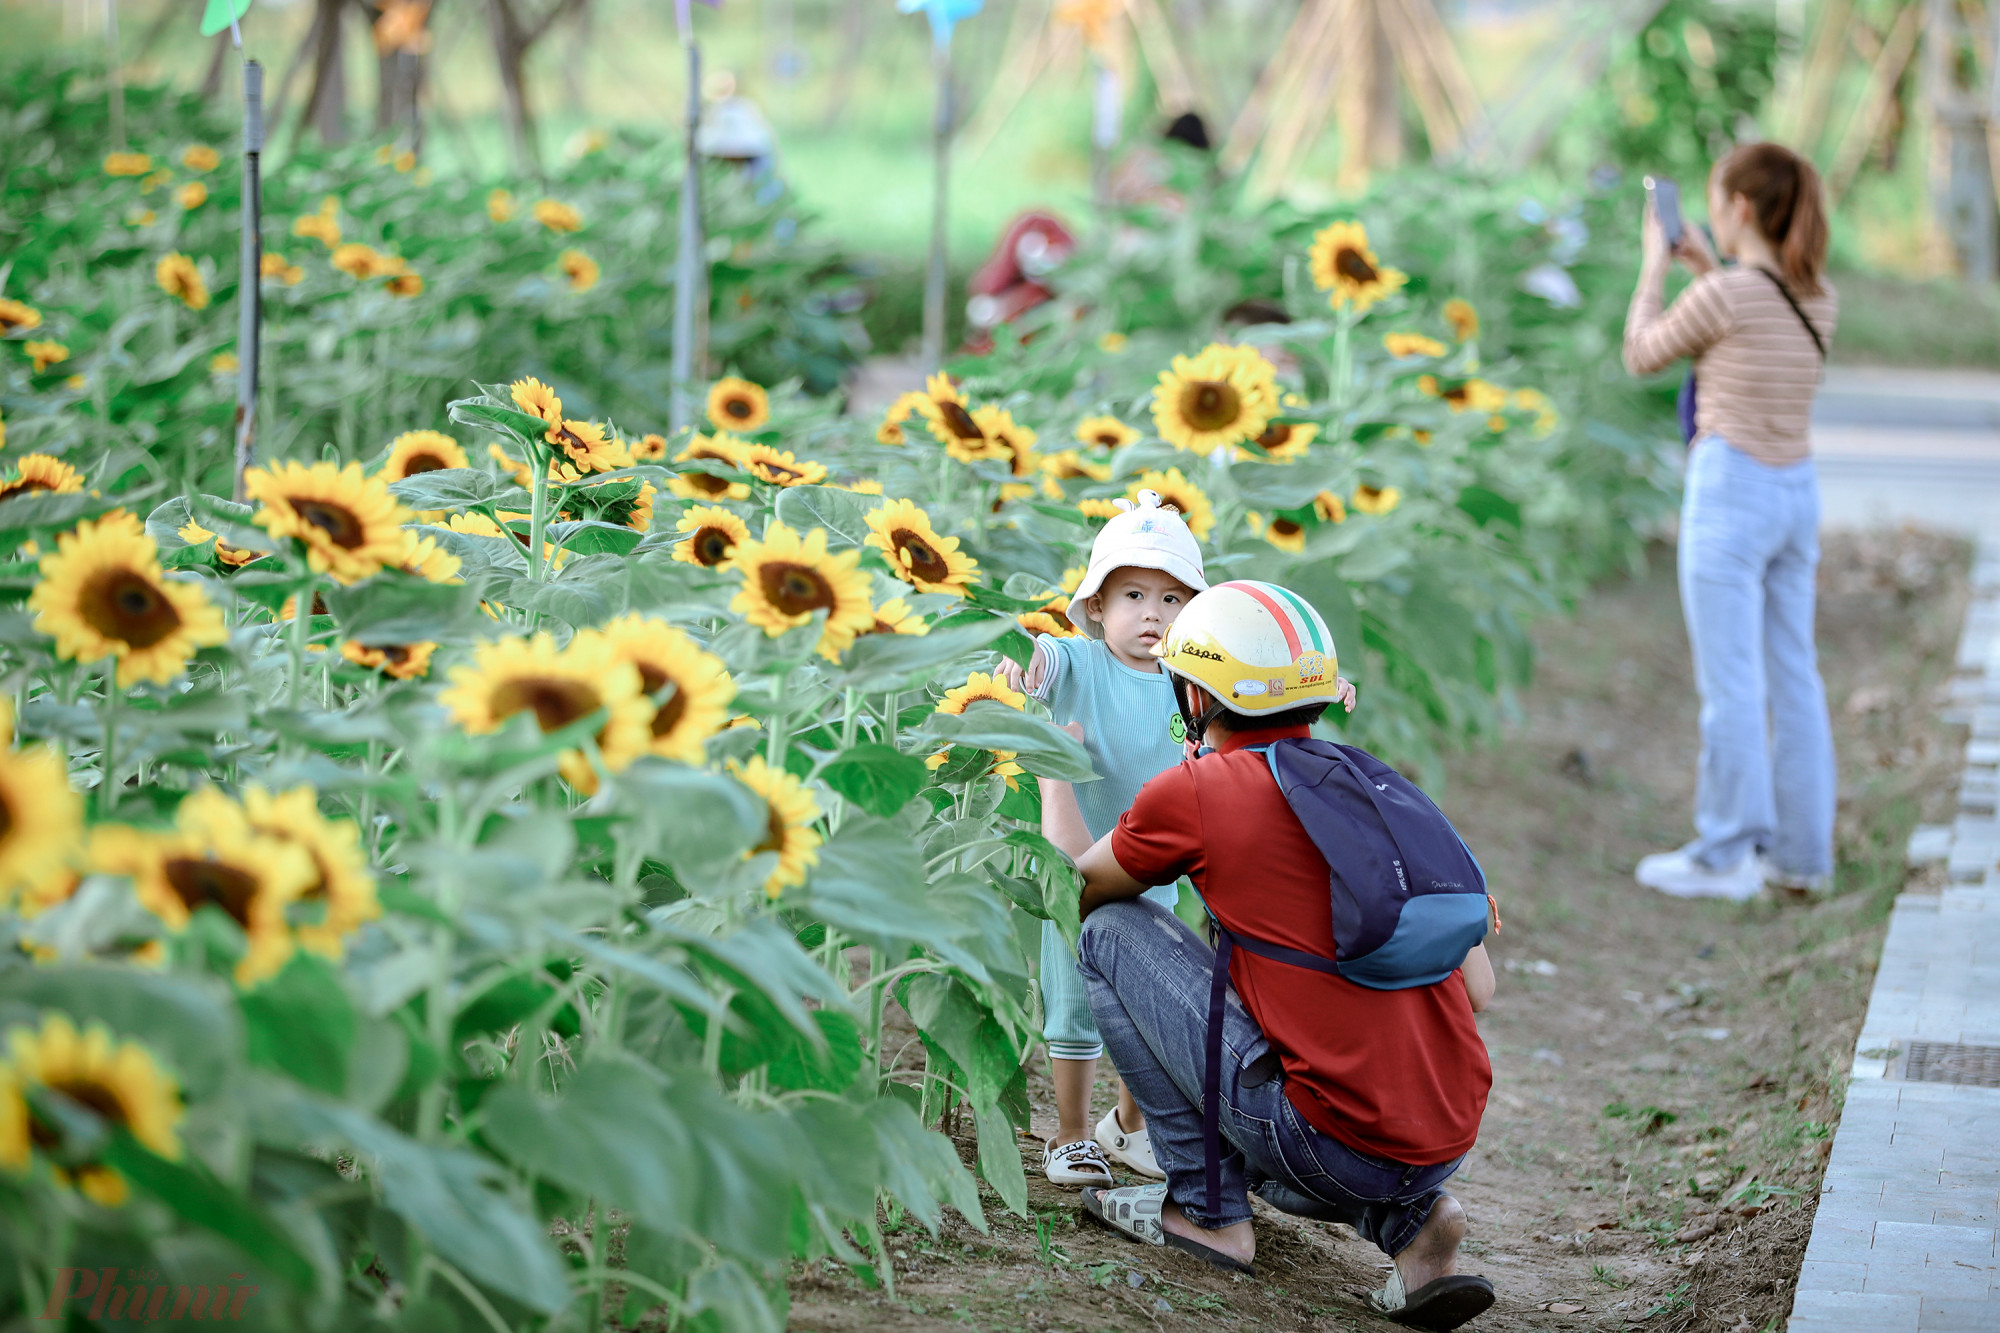 Nhiều phụ huynh cũng dẫn con nhỏ đến vui chơi và chụp hình. Theo đại diện quản lý vườn hoa, thời gian nở rộ nhất của hoa hướng dương từ ngày 27/12.